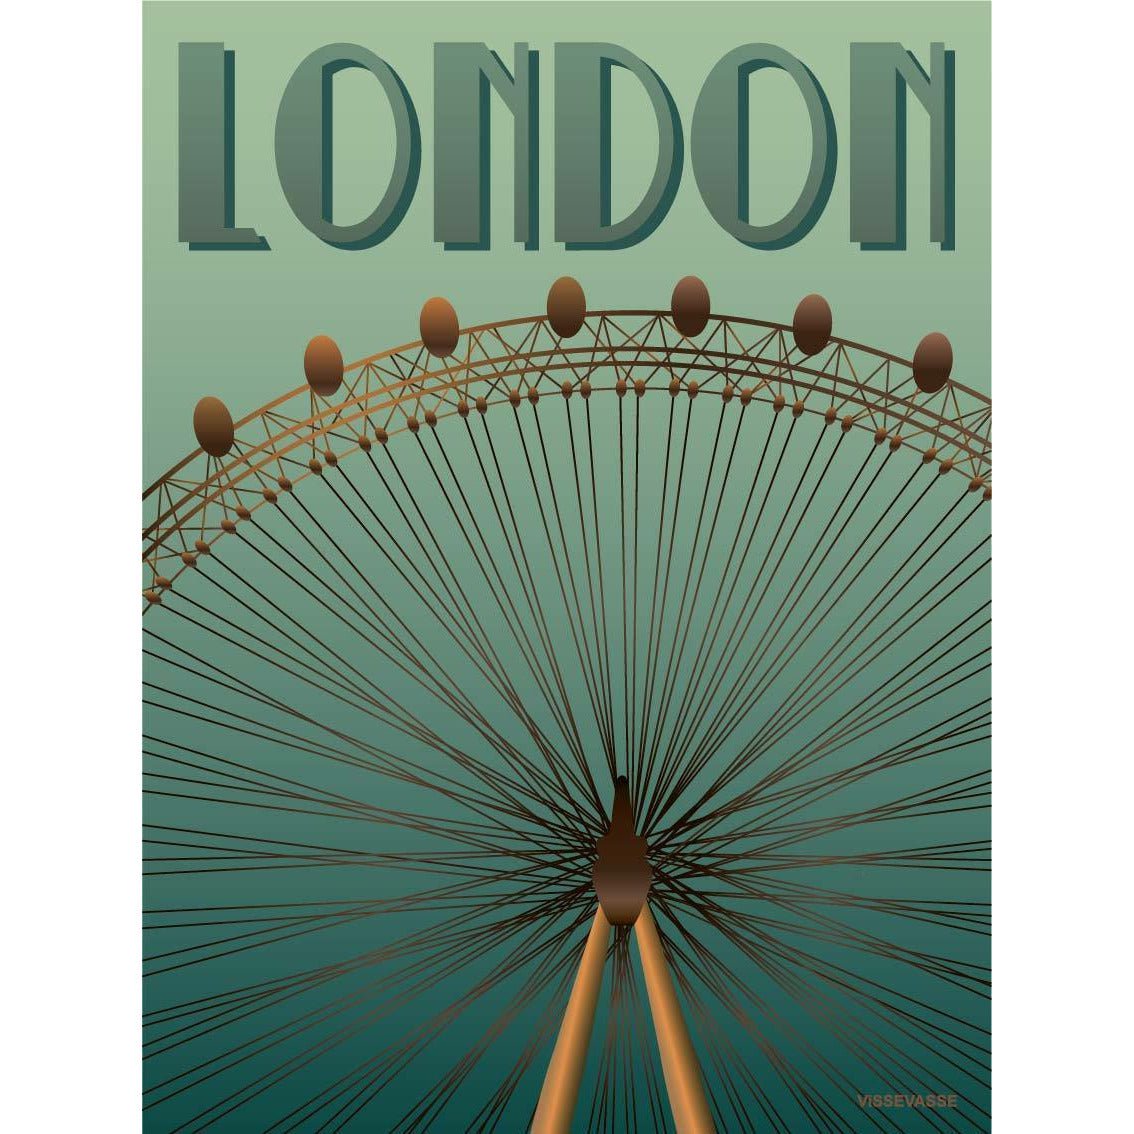 Affiche Vissevasse London Eye, 50 x70 cm